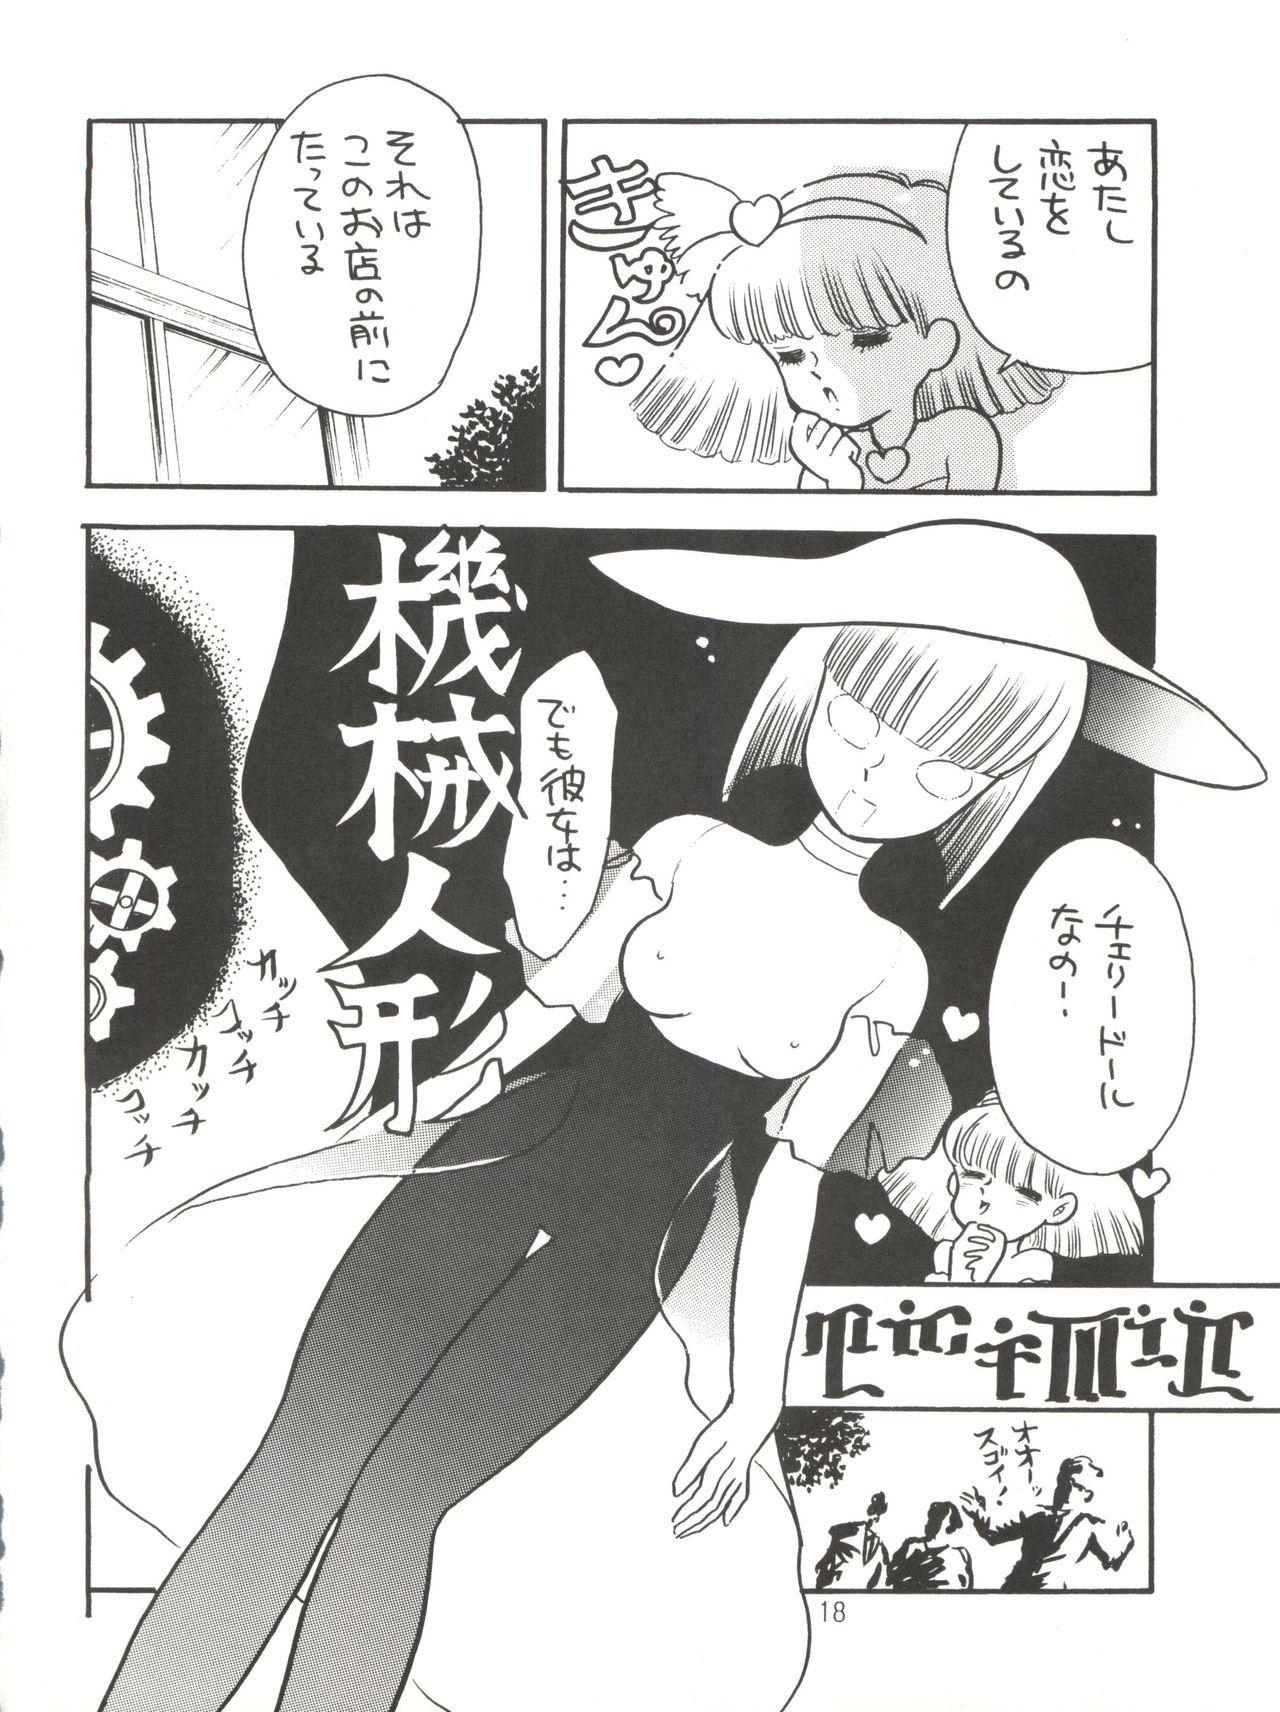 [紫電会 (お梅) MOMO POWER (Mahou no Princess Minky Momo) 17